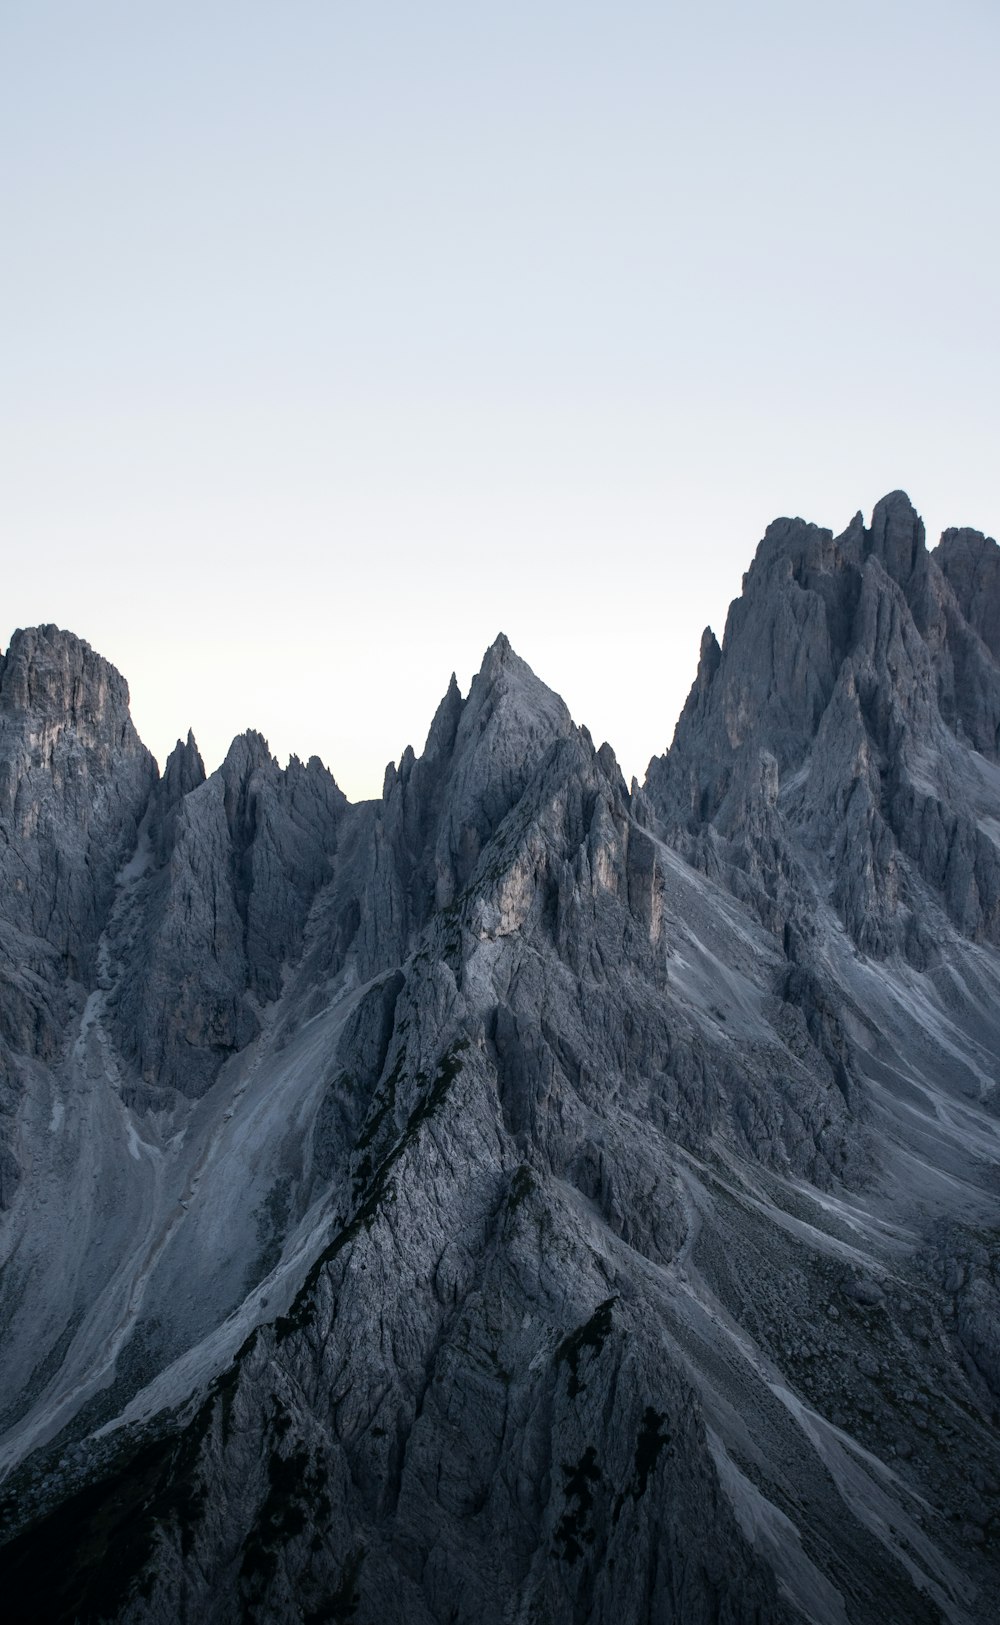 Un gruppo di montagne con uno sfondo del cielo